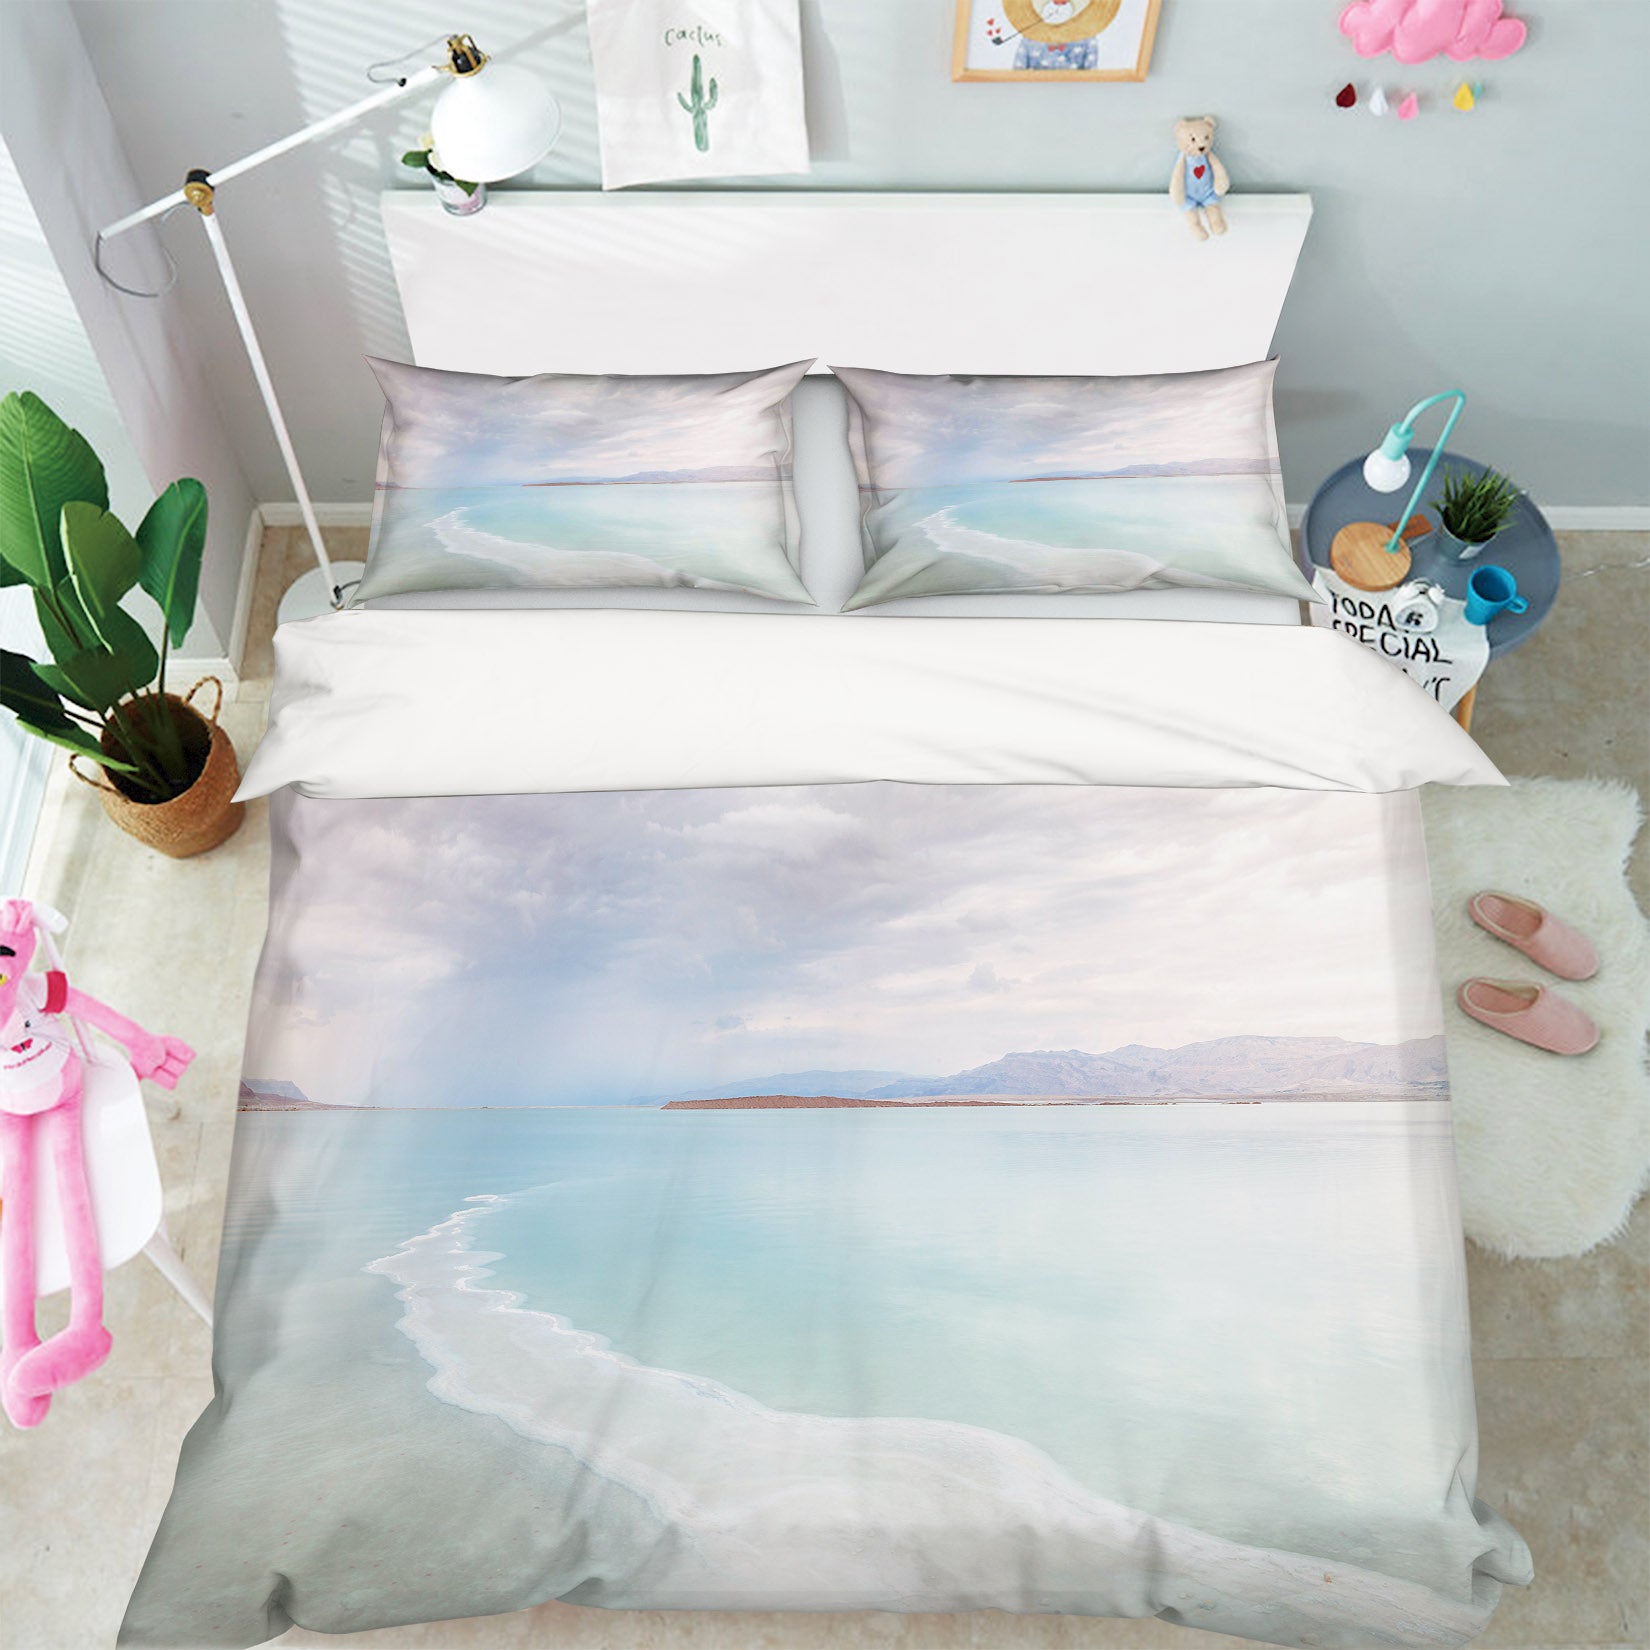 3D Ocean 85113 Assaf Frank Bedding Bed Pillowcases Quilt